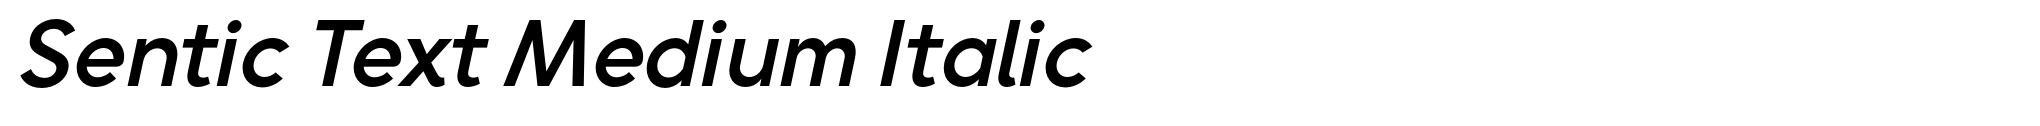 Sentic Text Medium Italic image